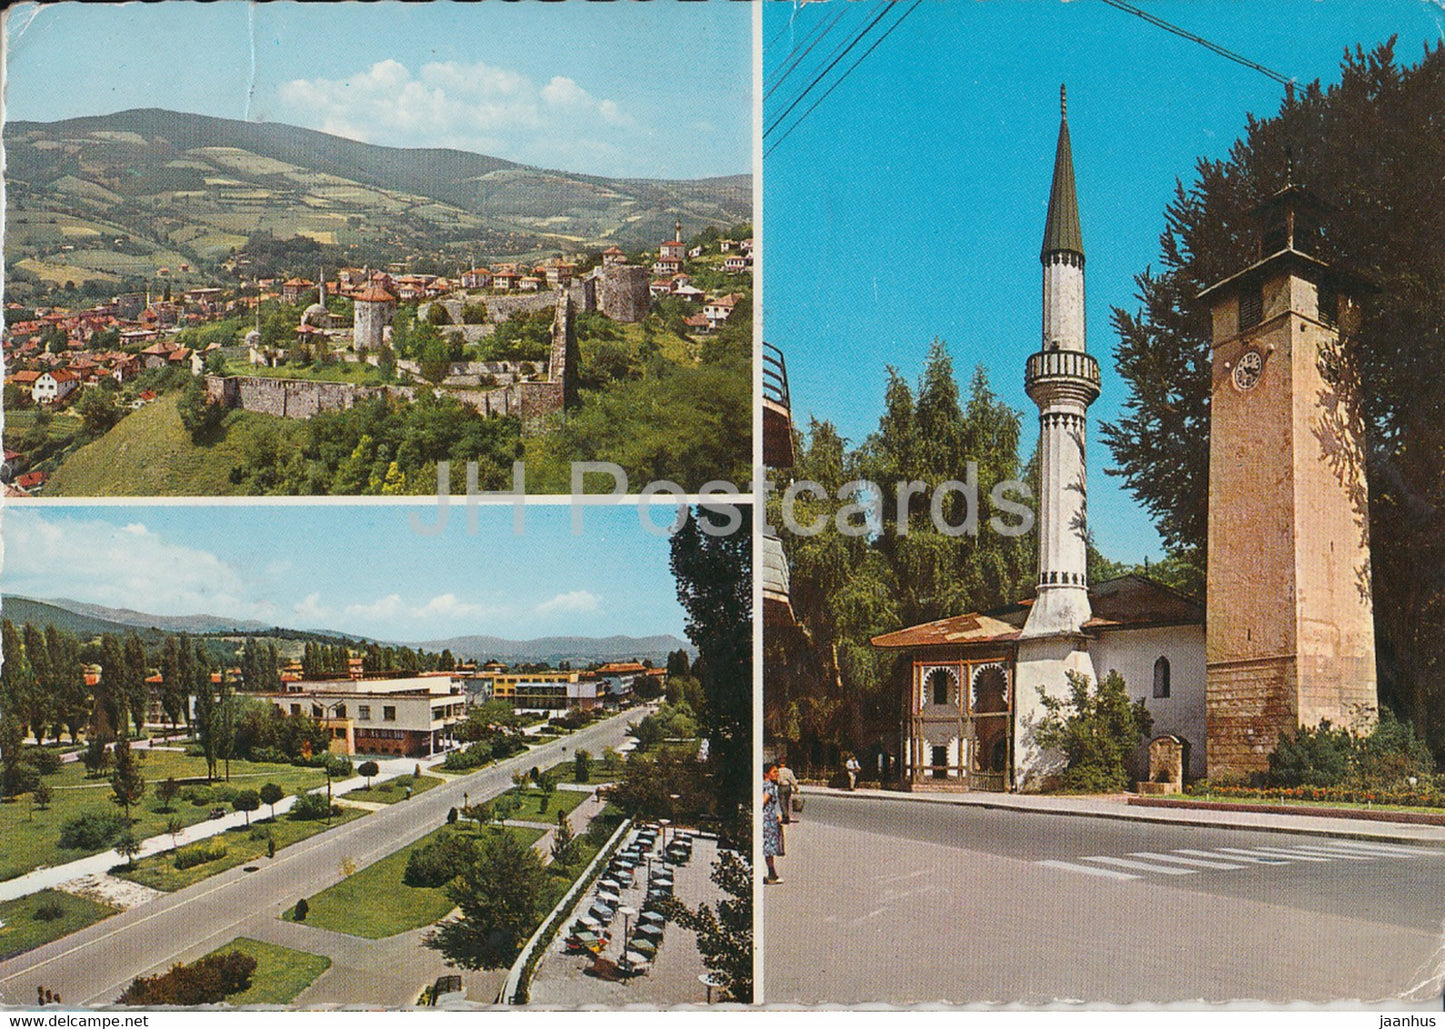 Travnik i Novi Travnik - general view - street - multiview - 1972 - Yugoslavia - Bosnia and Herzegovina - used - JH Postcards